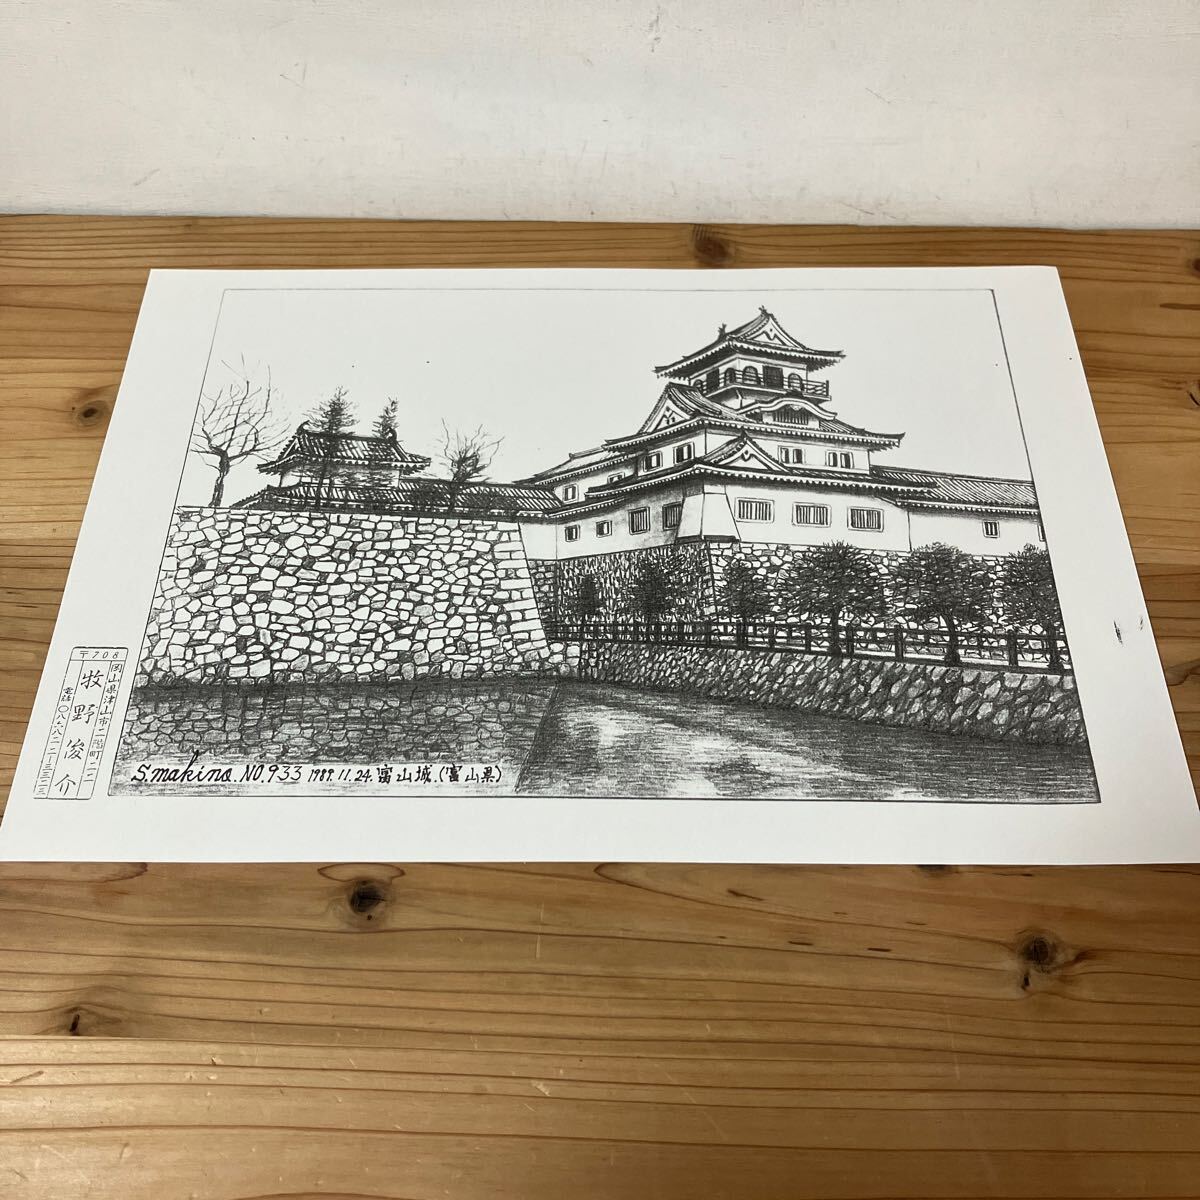 Mao H0305 [Makino Shunsuke, Château de Toyama n° 933, dessin au crayon imprimé] 1889, Ouvrages d'art, Peinture, Dessin au crayon, Dessin au charbon de bois